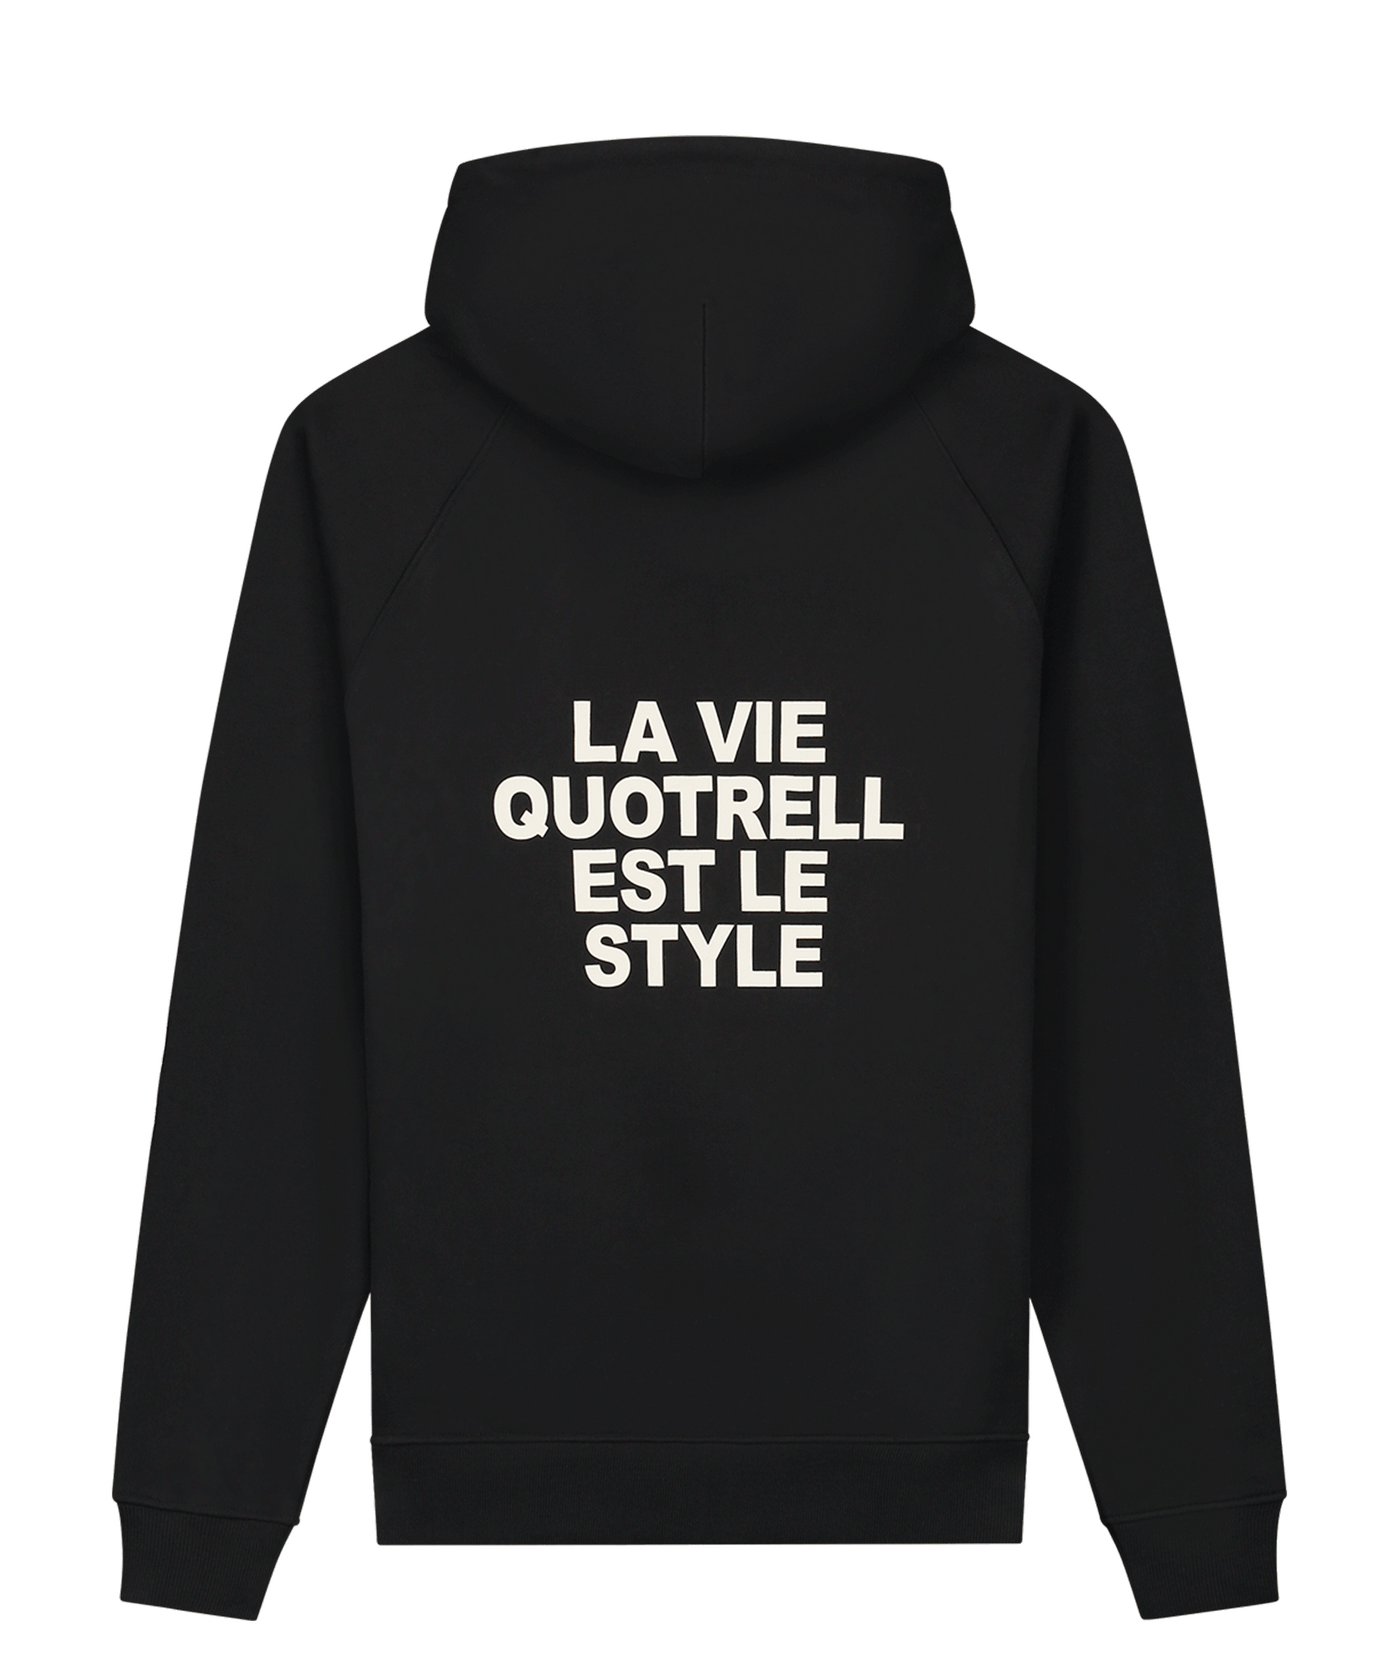 Quotrell - La Vie - Zip Hoodie - Black/beige